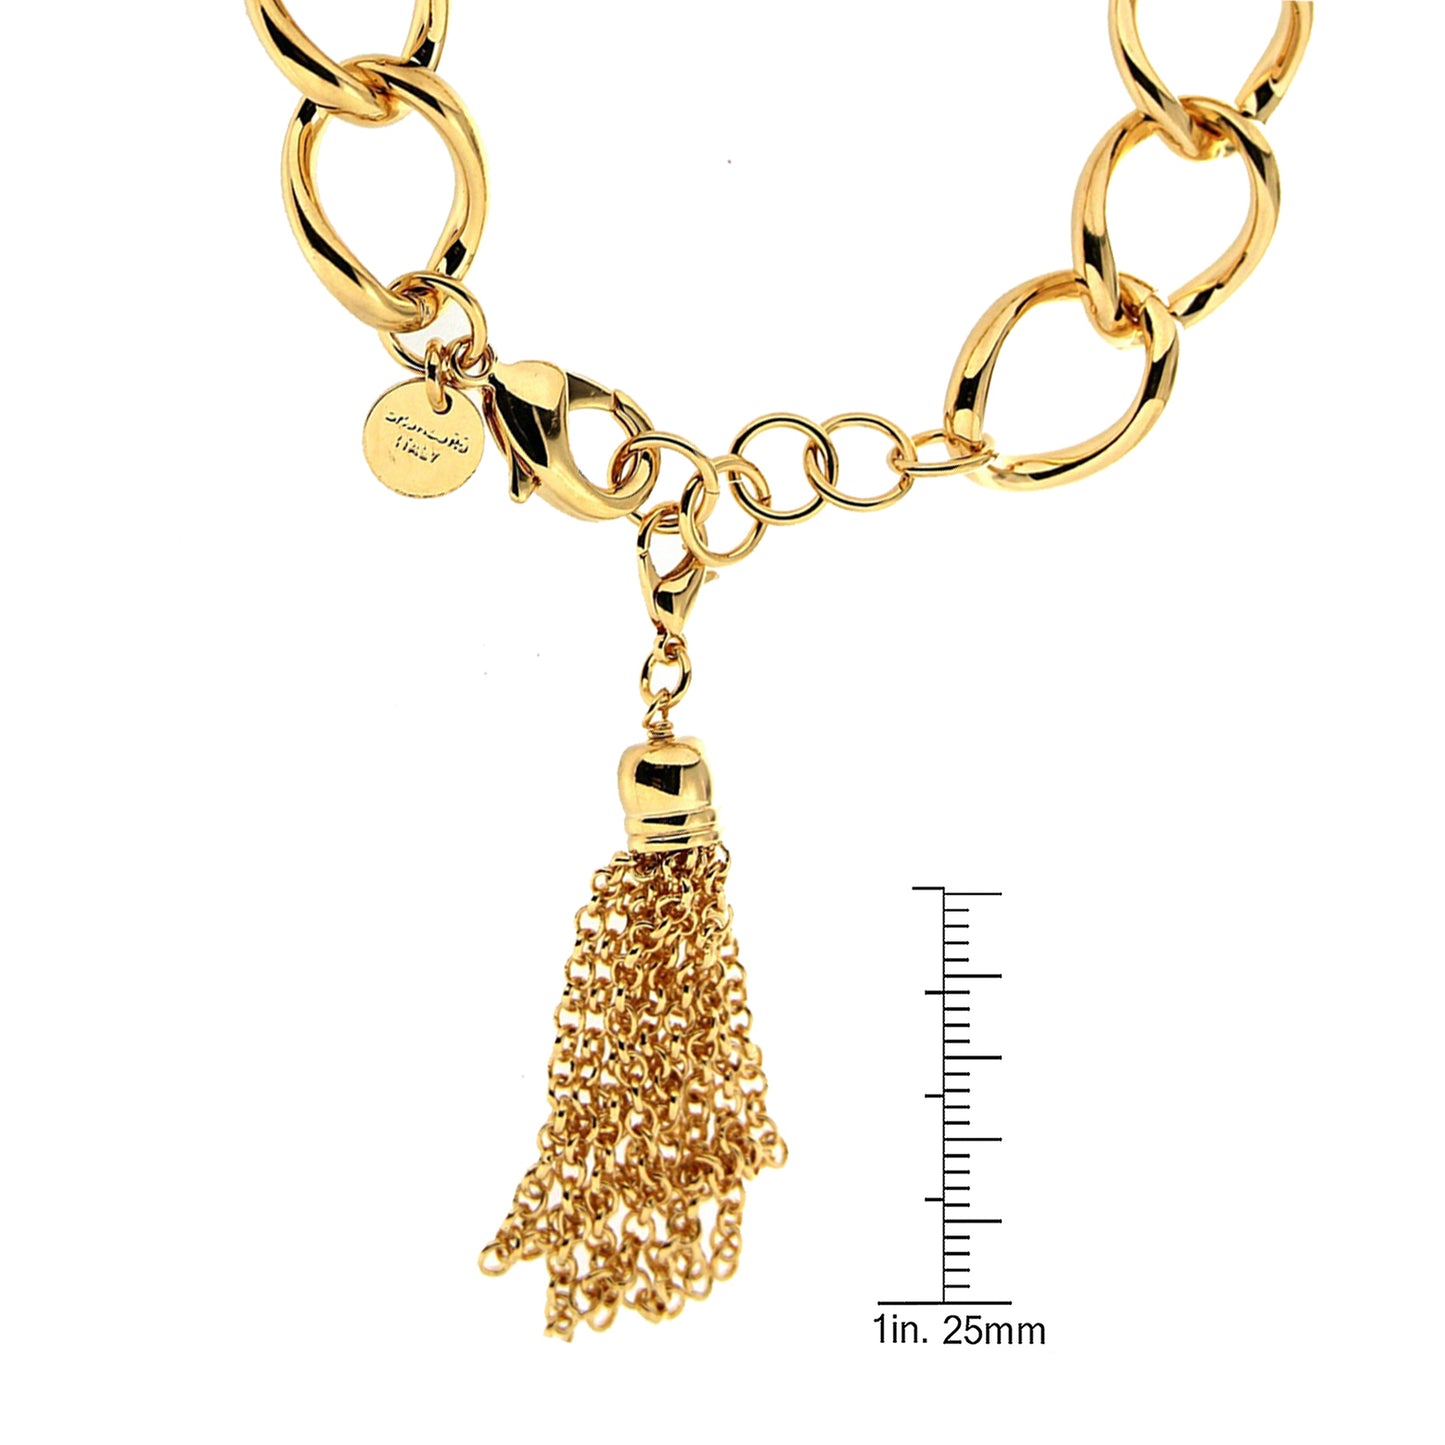 9" Yellow gold Tassel Bracelet